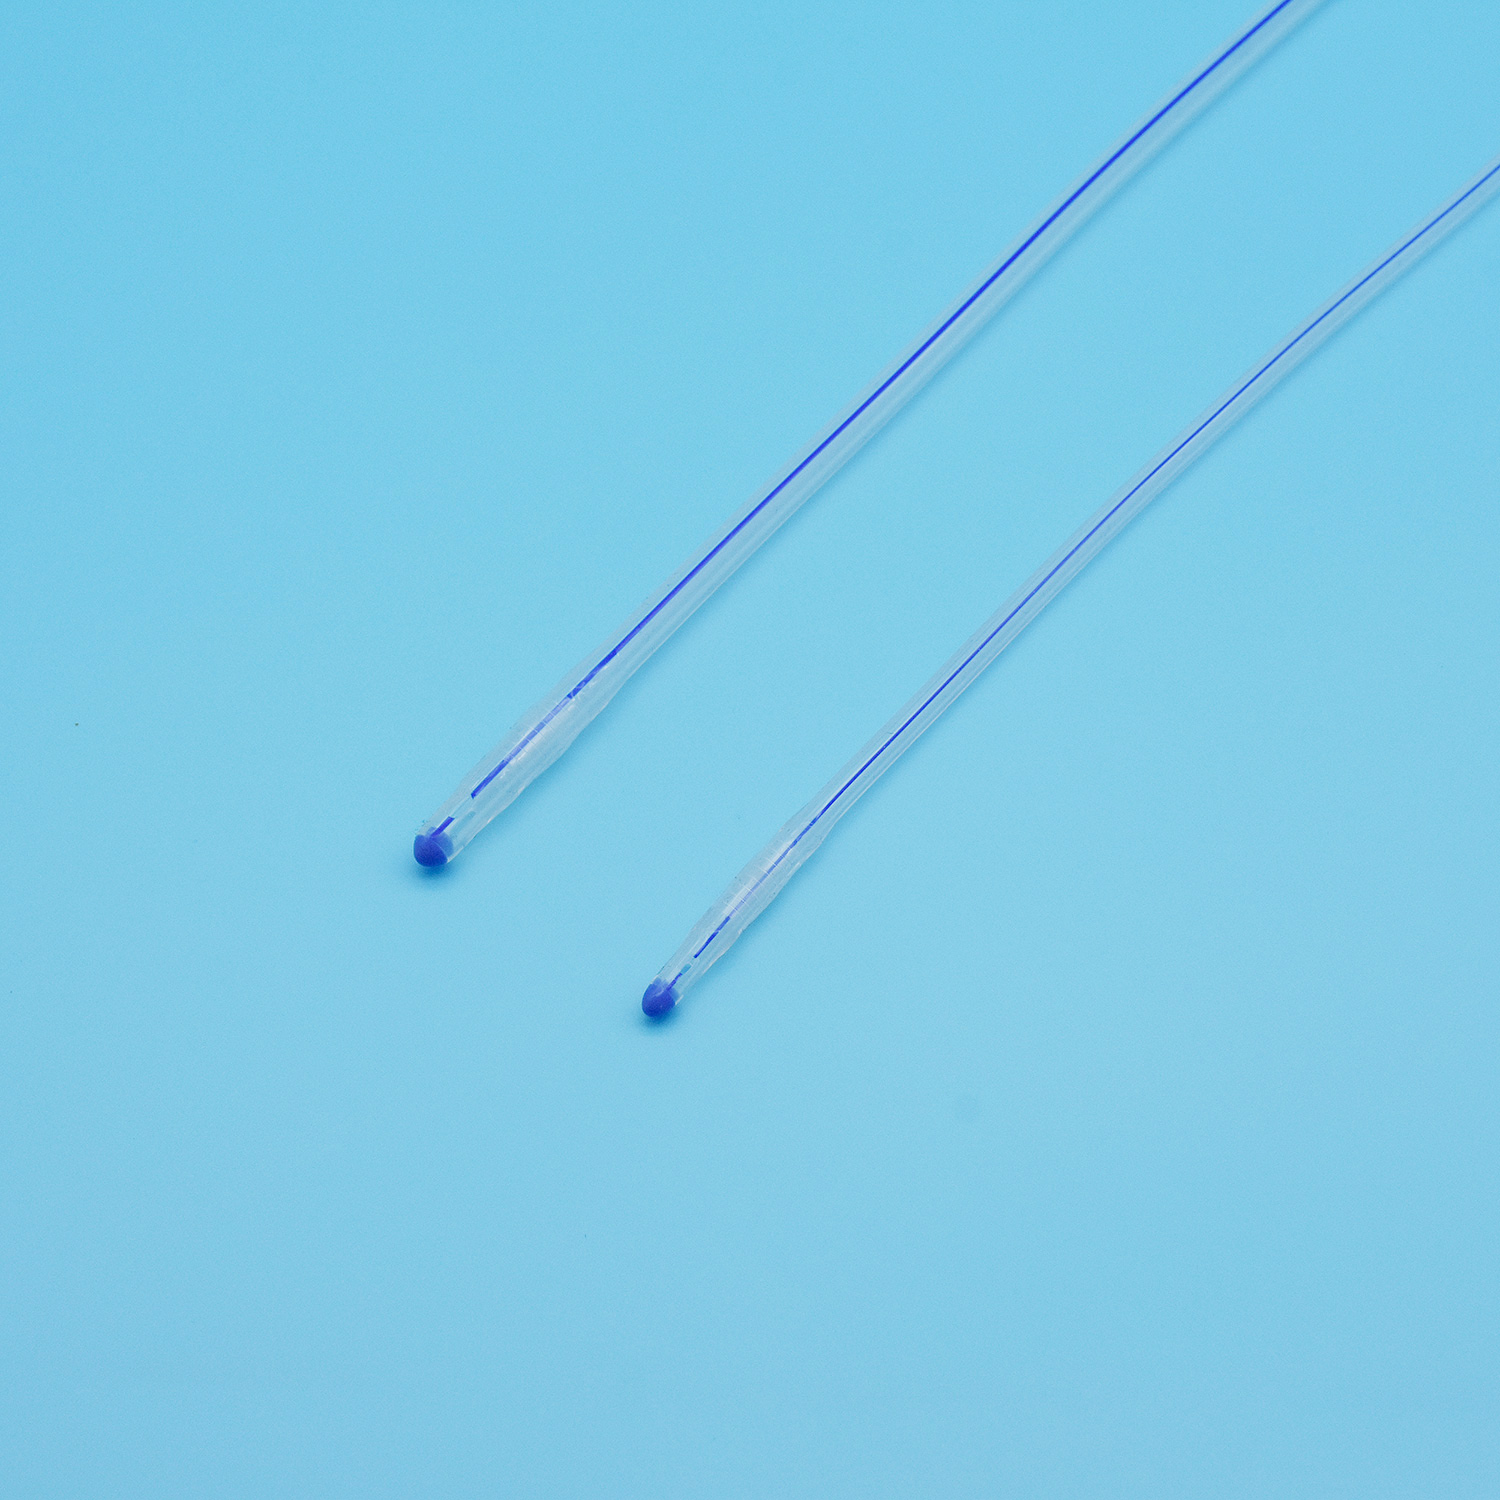 3 жақты силиконды фоли катетері стандартты бір рет қолданылатын бір реттік сатылым Қытайдағы дөңгелек ұшы қалыпты шар зәрі бар уретральды катетер дренаждық катетер зәр шығару